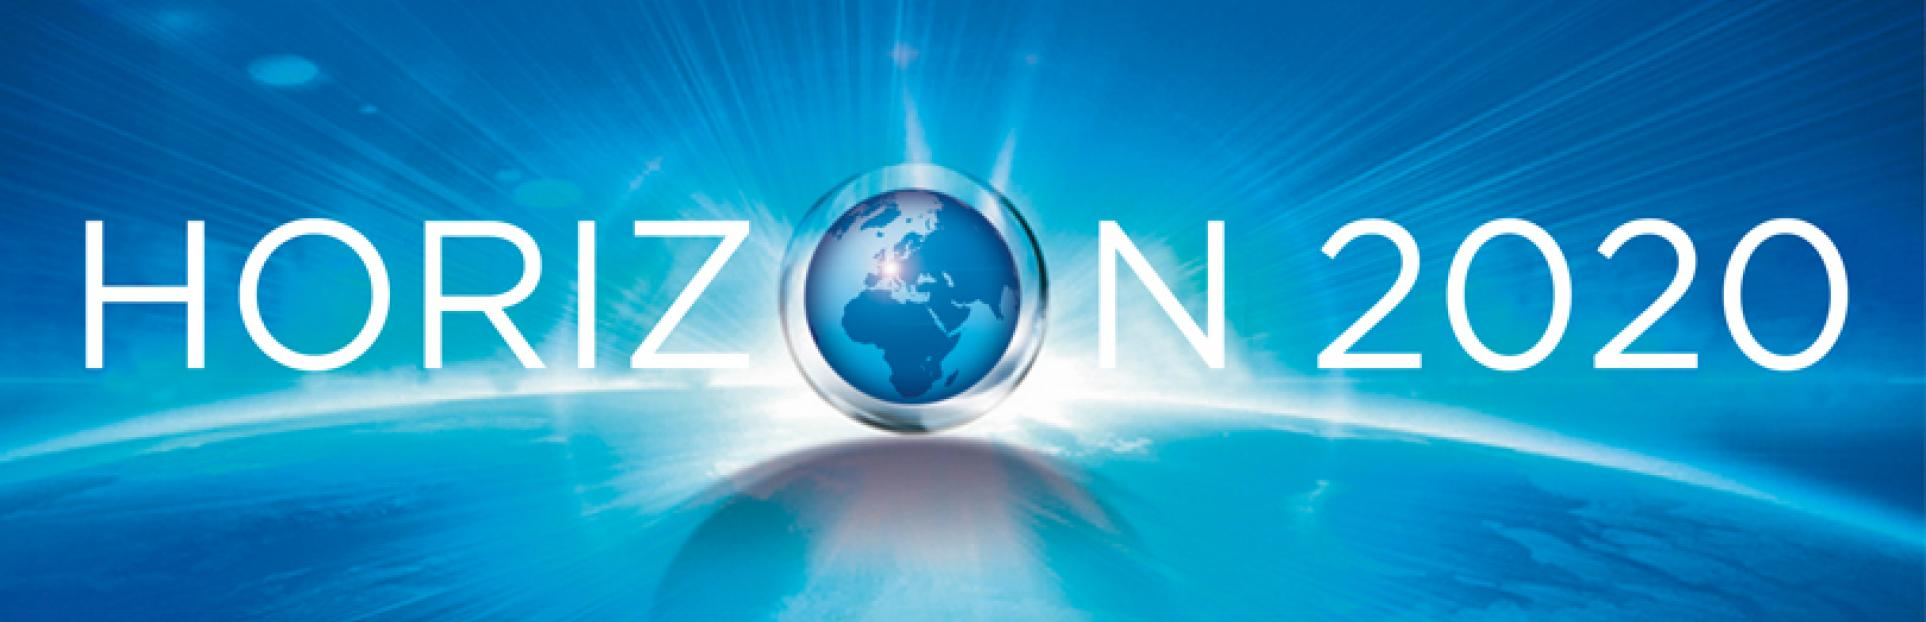 EU Horizon 2020 Research Programme